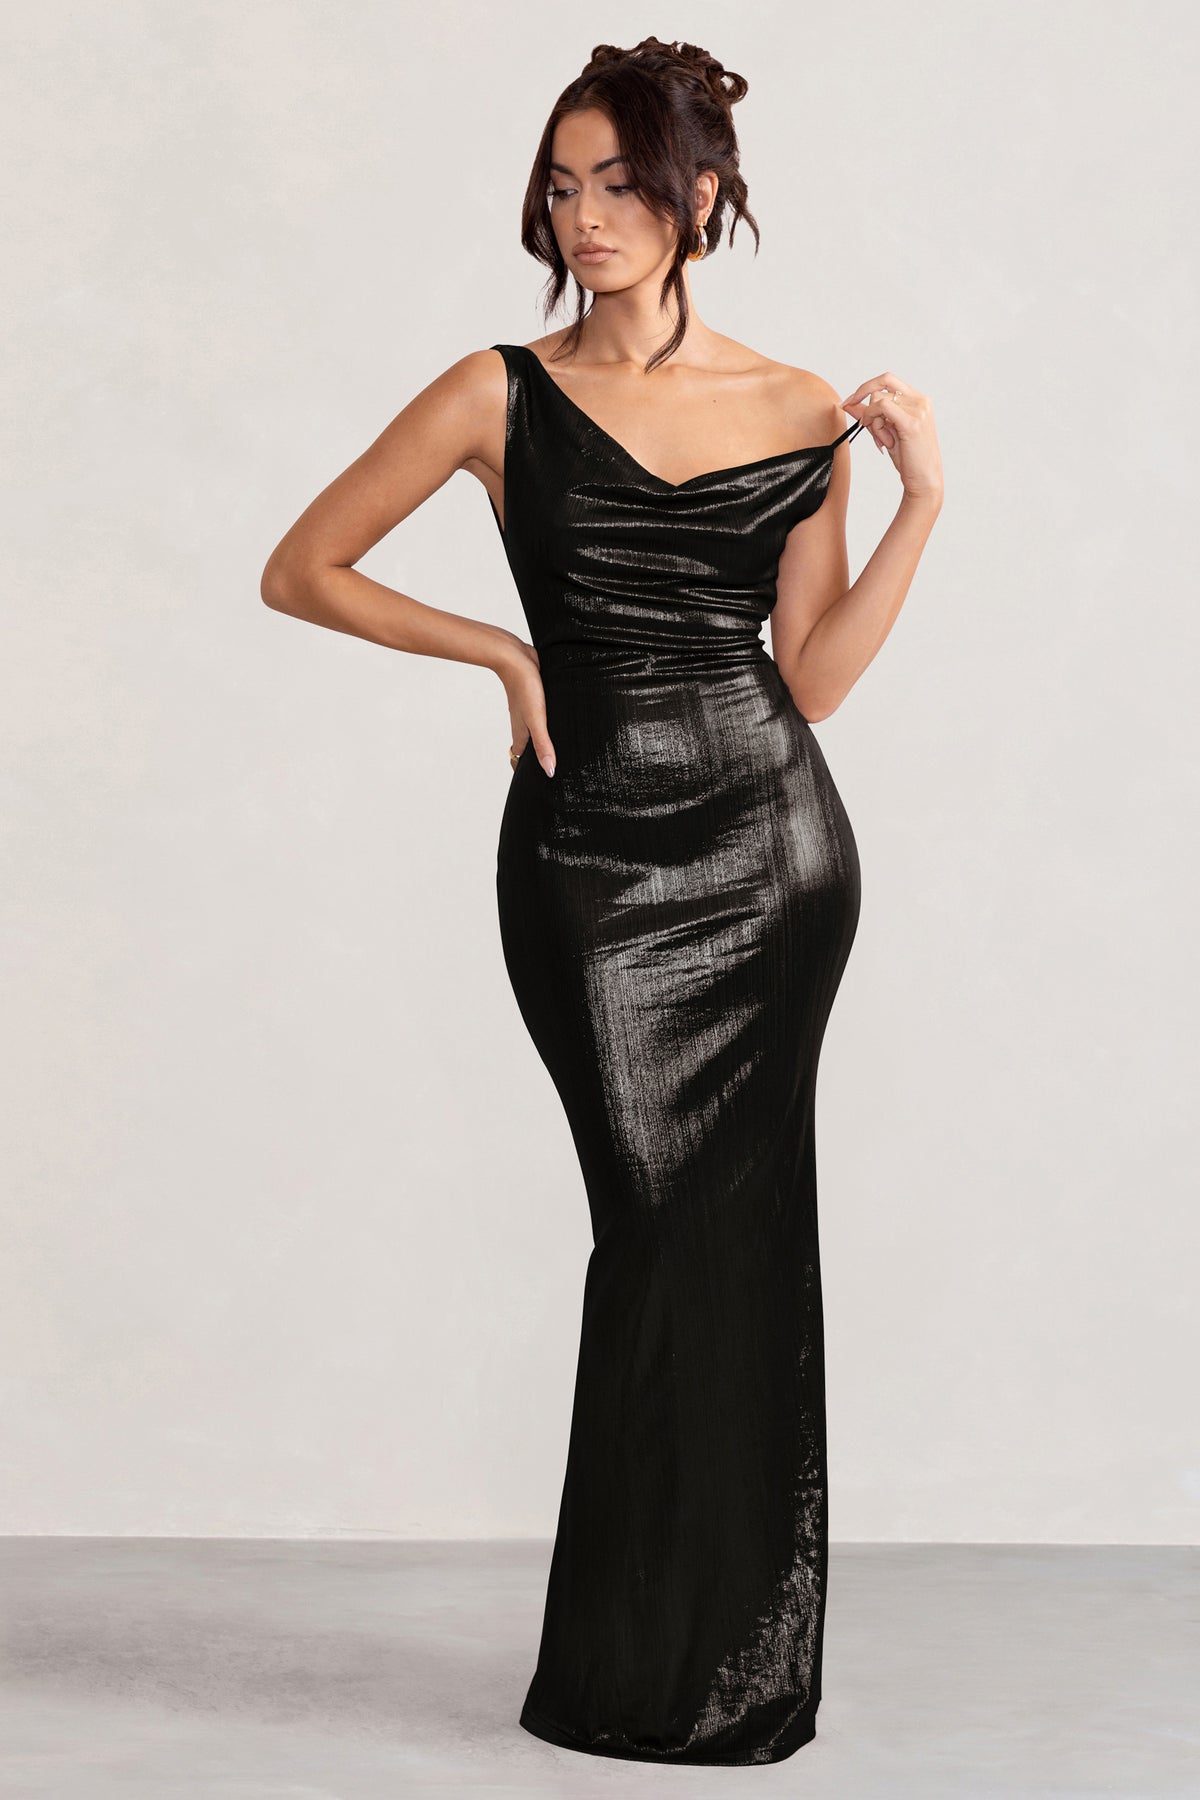 Law of Attraction Black Bardot Draped Split Maxi Dress – Club L London - USA